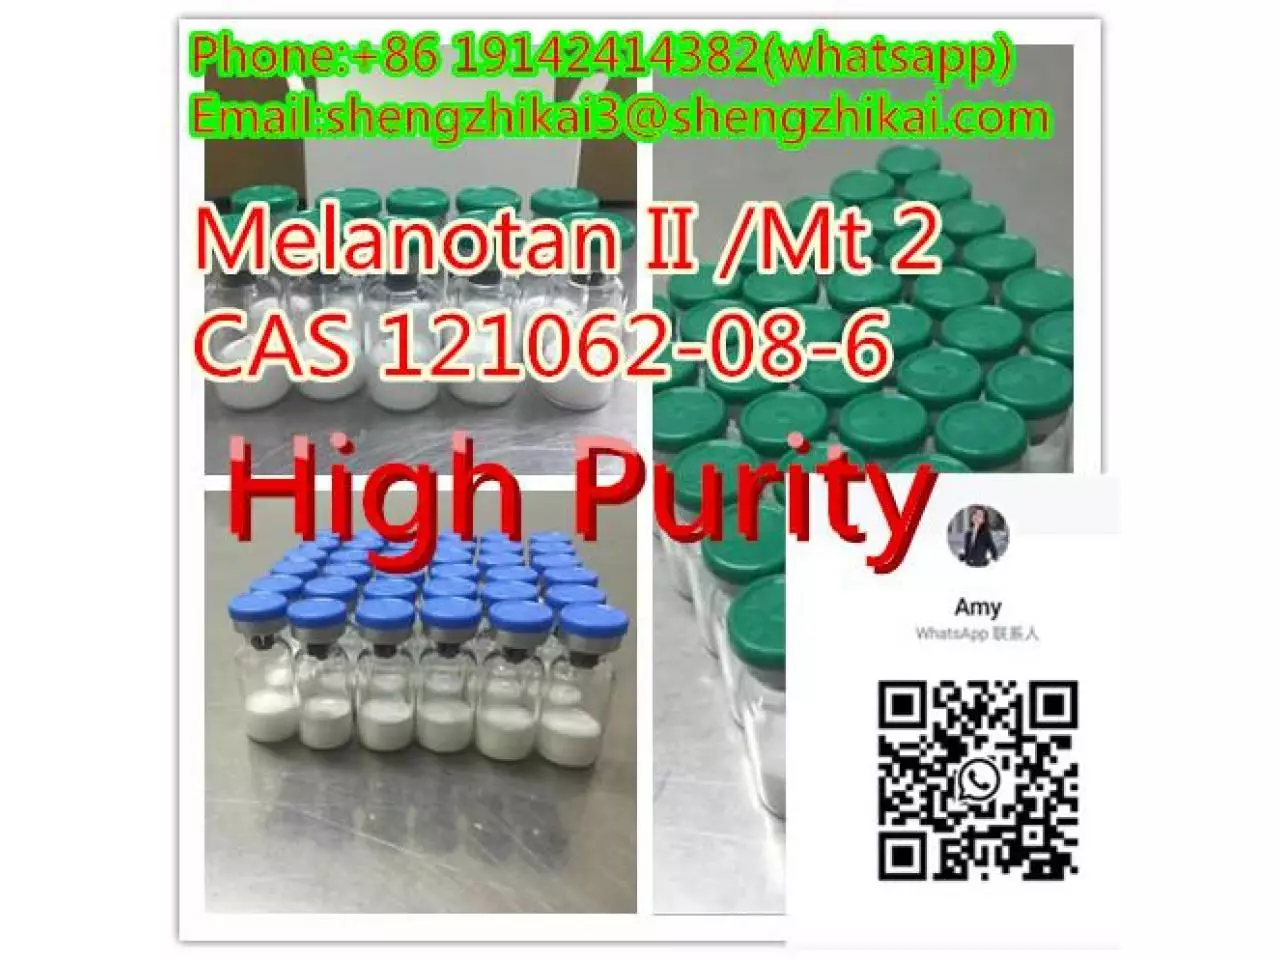 لببتيد عالي الجودة لدباغة الجلد CAS 121062-08-6 Melanotan II Mt2 Mt2 - 2/10